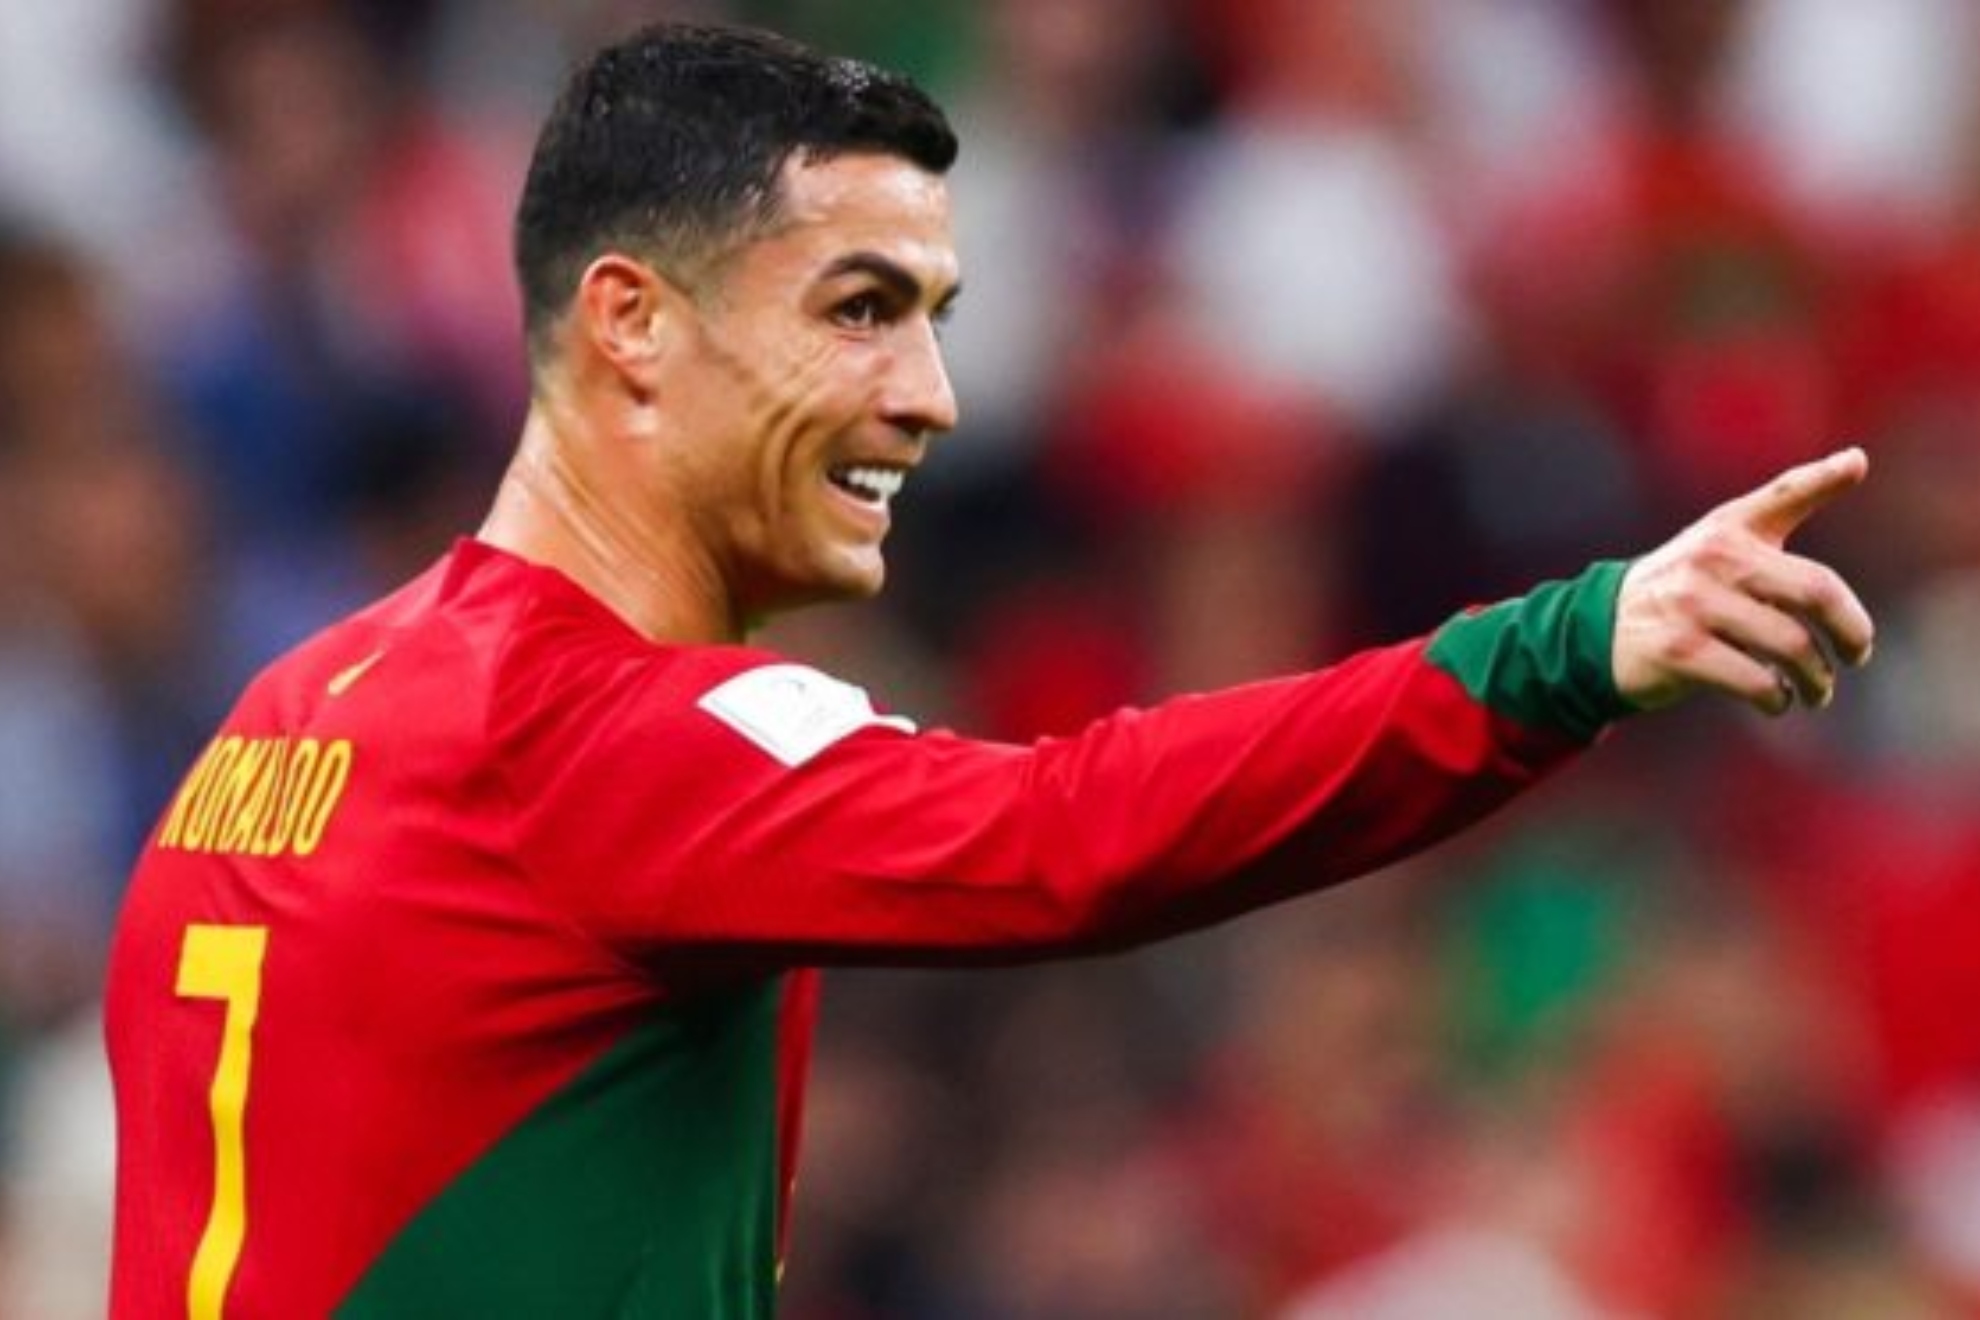 Cristiano Ronaldo jugará en el Al-Nassr a partir del 1 de enero | Marca